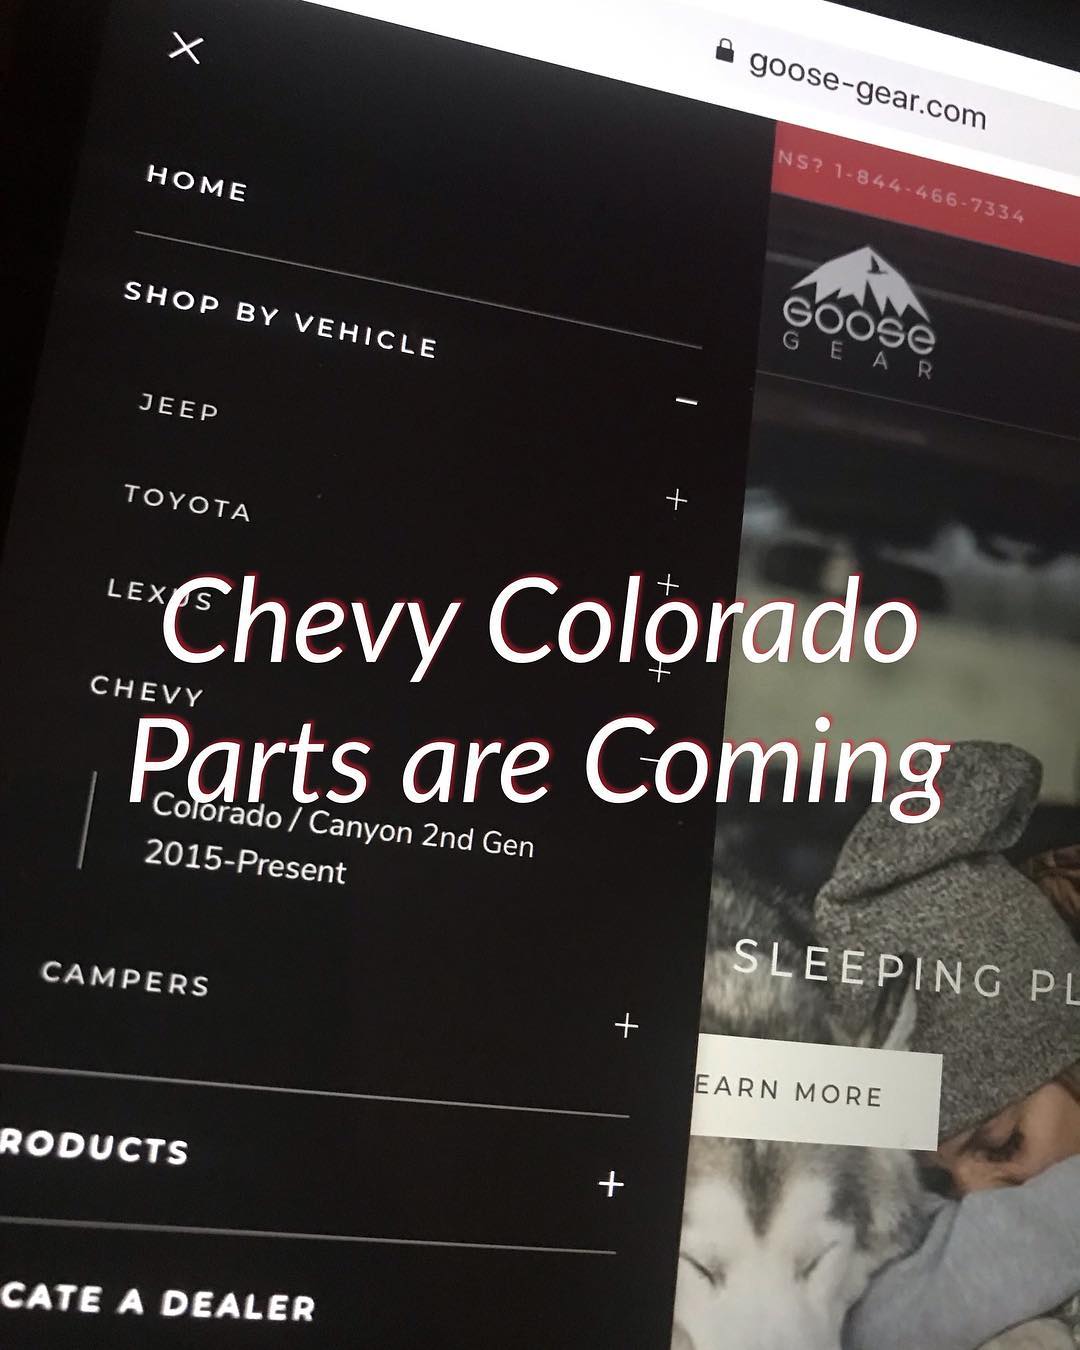 Chevy Colorado Parts are Coming - Goose Gear